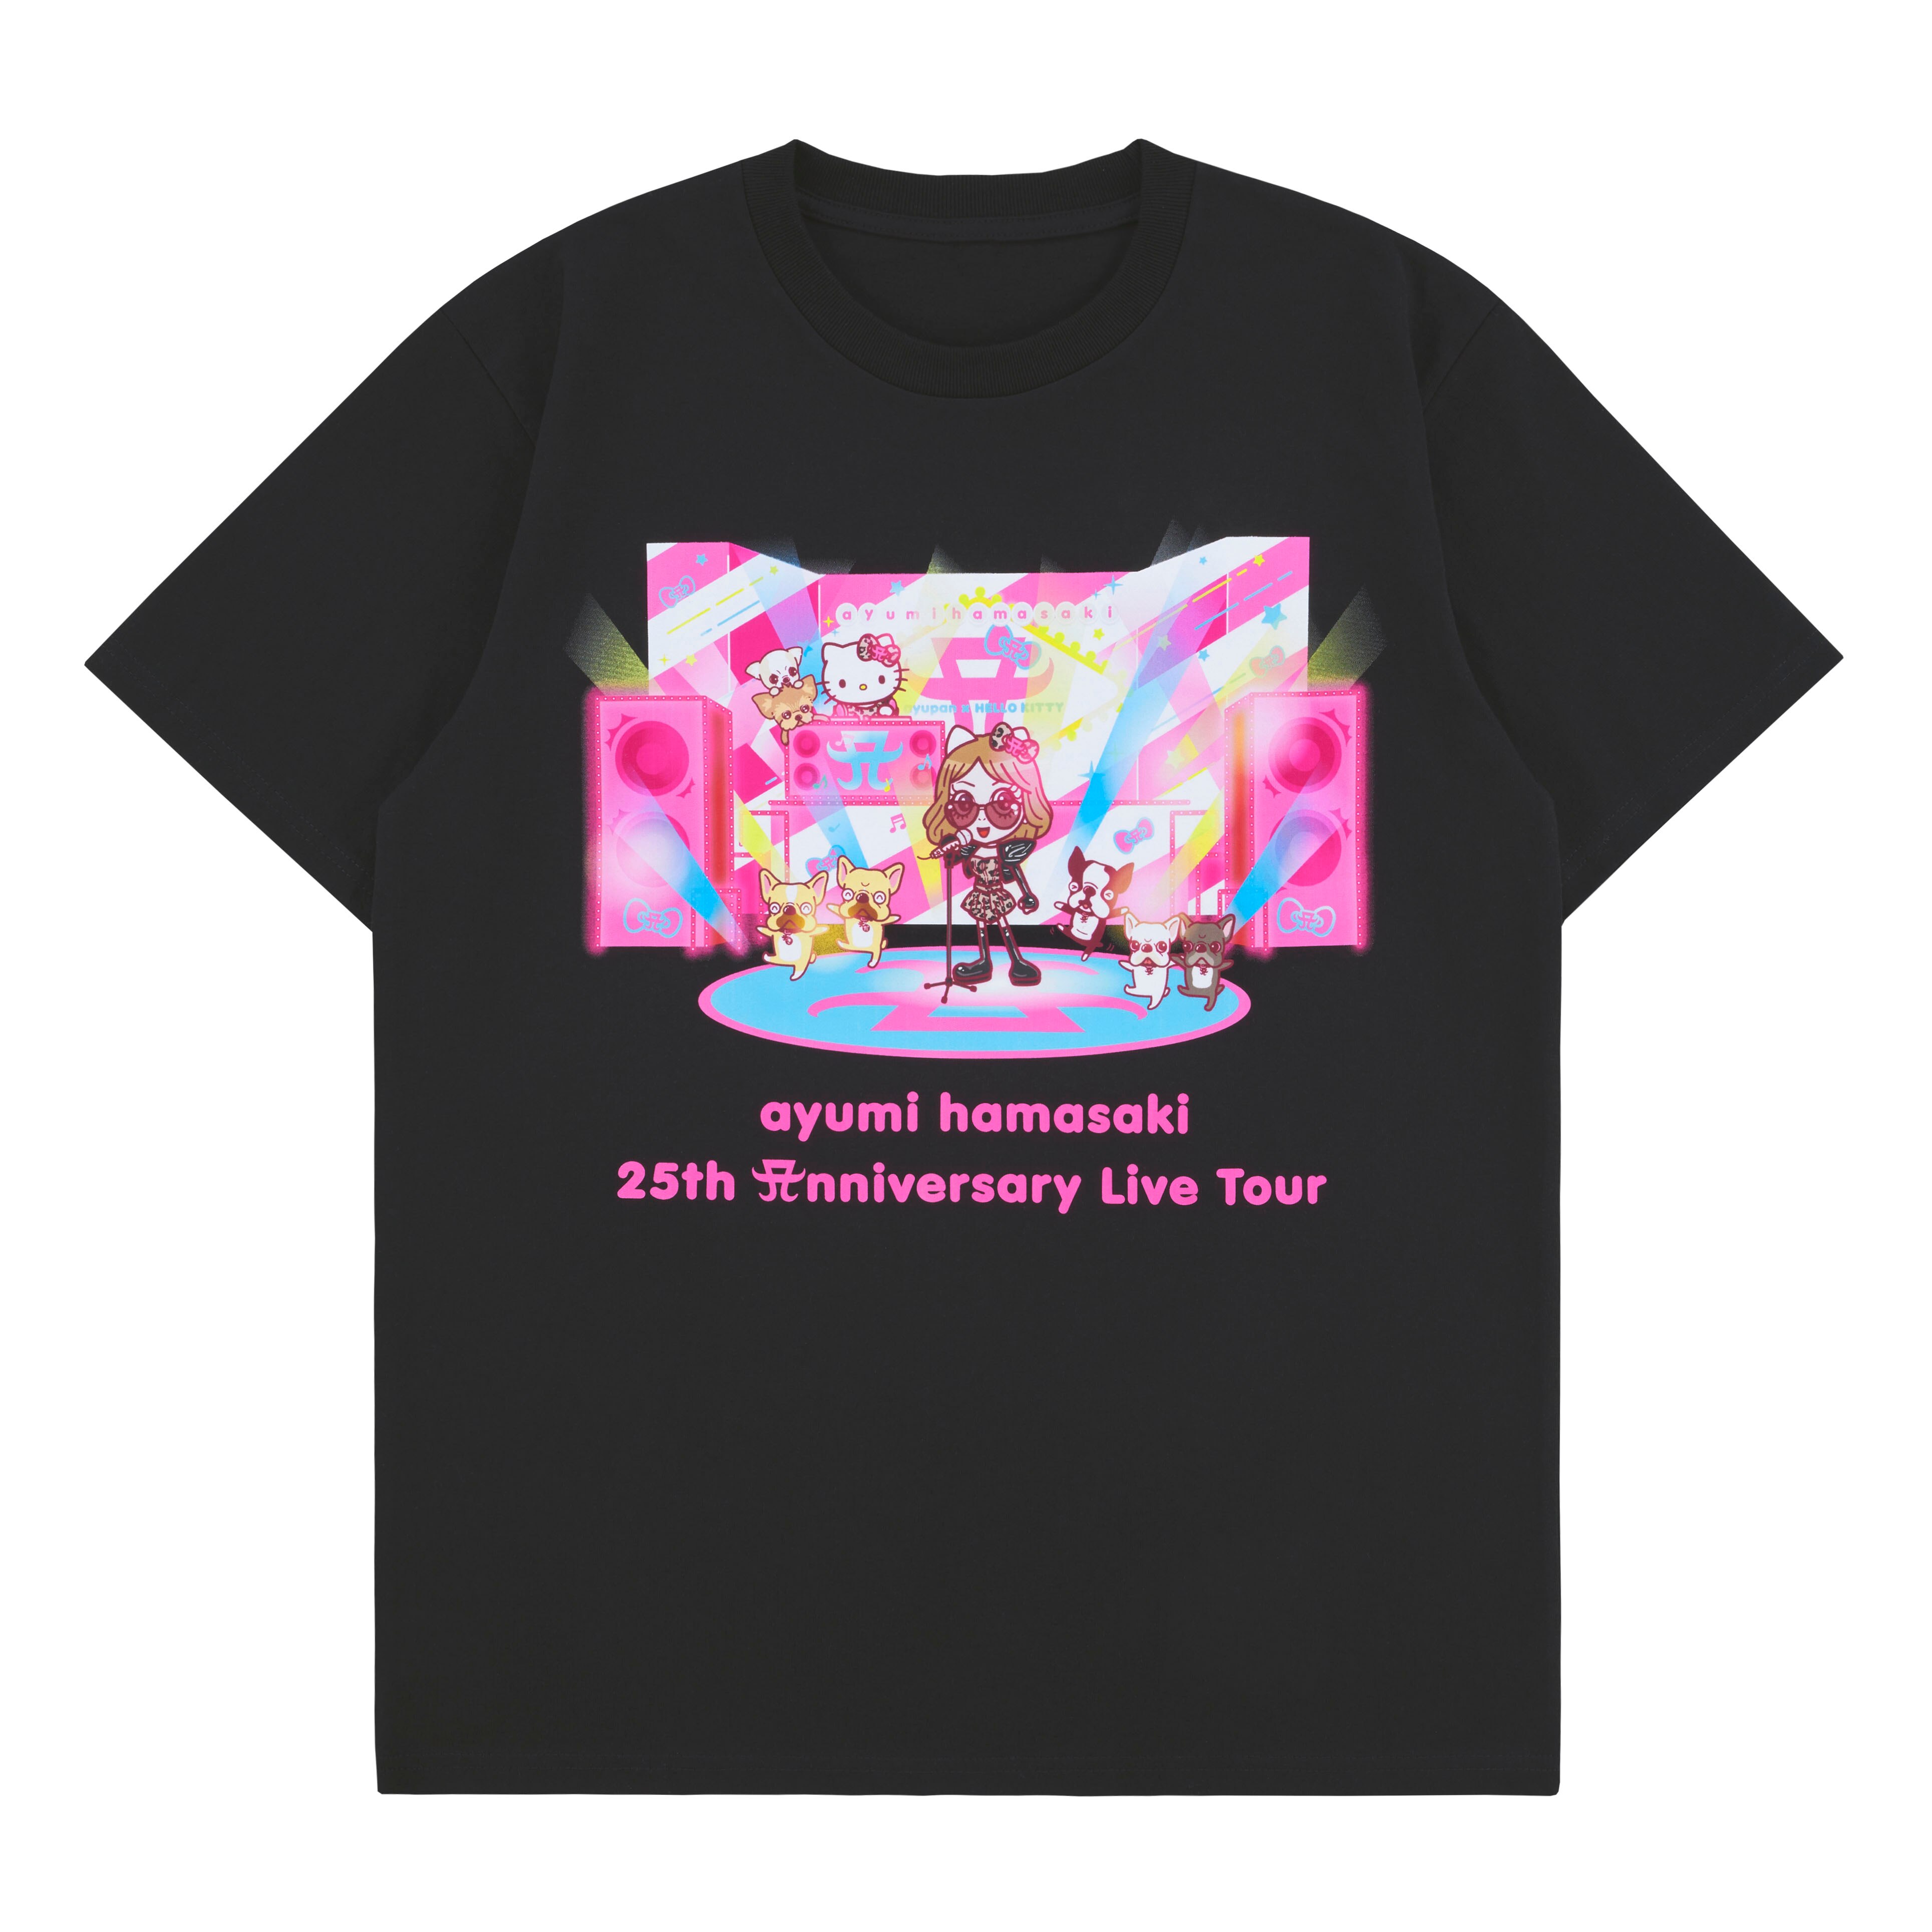 上品な 浜崎あゆみ 25th Anniversary Live Tour Tシャツ